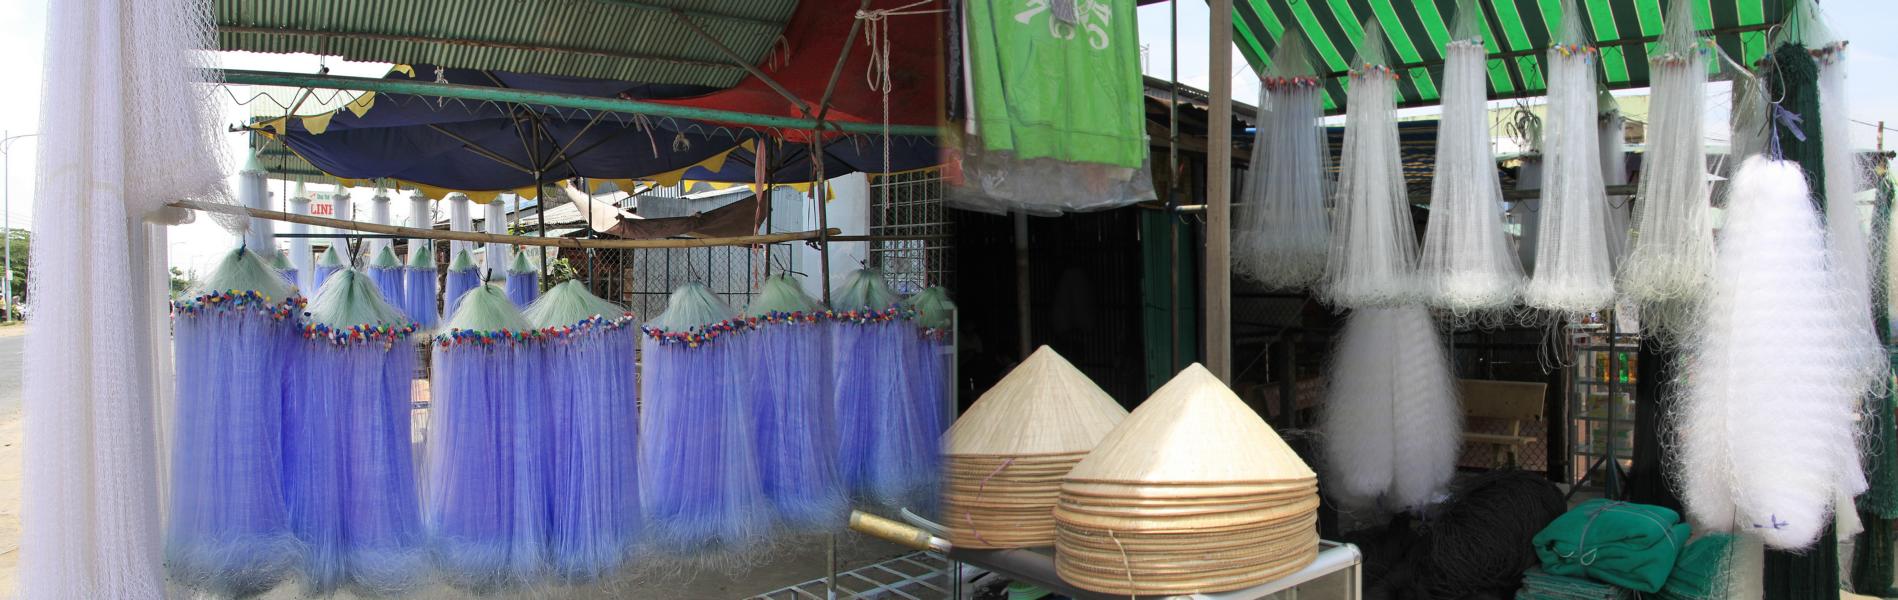 Die Fangnetze sind nicht billig. Wir sahen nur einen Händler, der die aus Kunststoff hergestellten Netze anbot. 